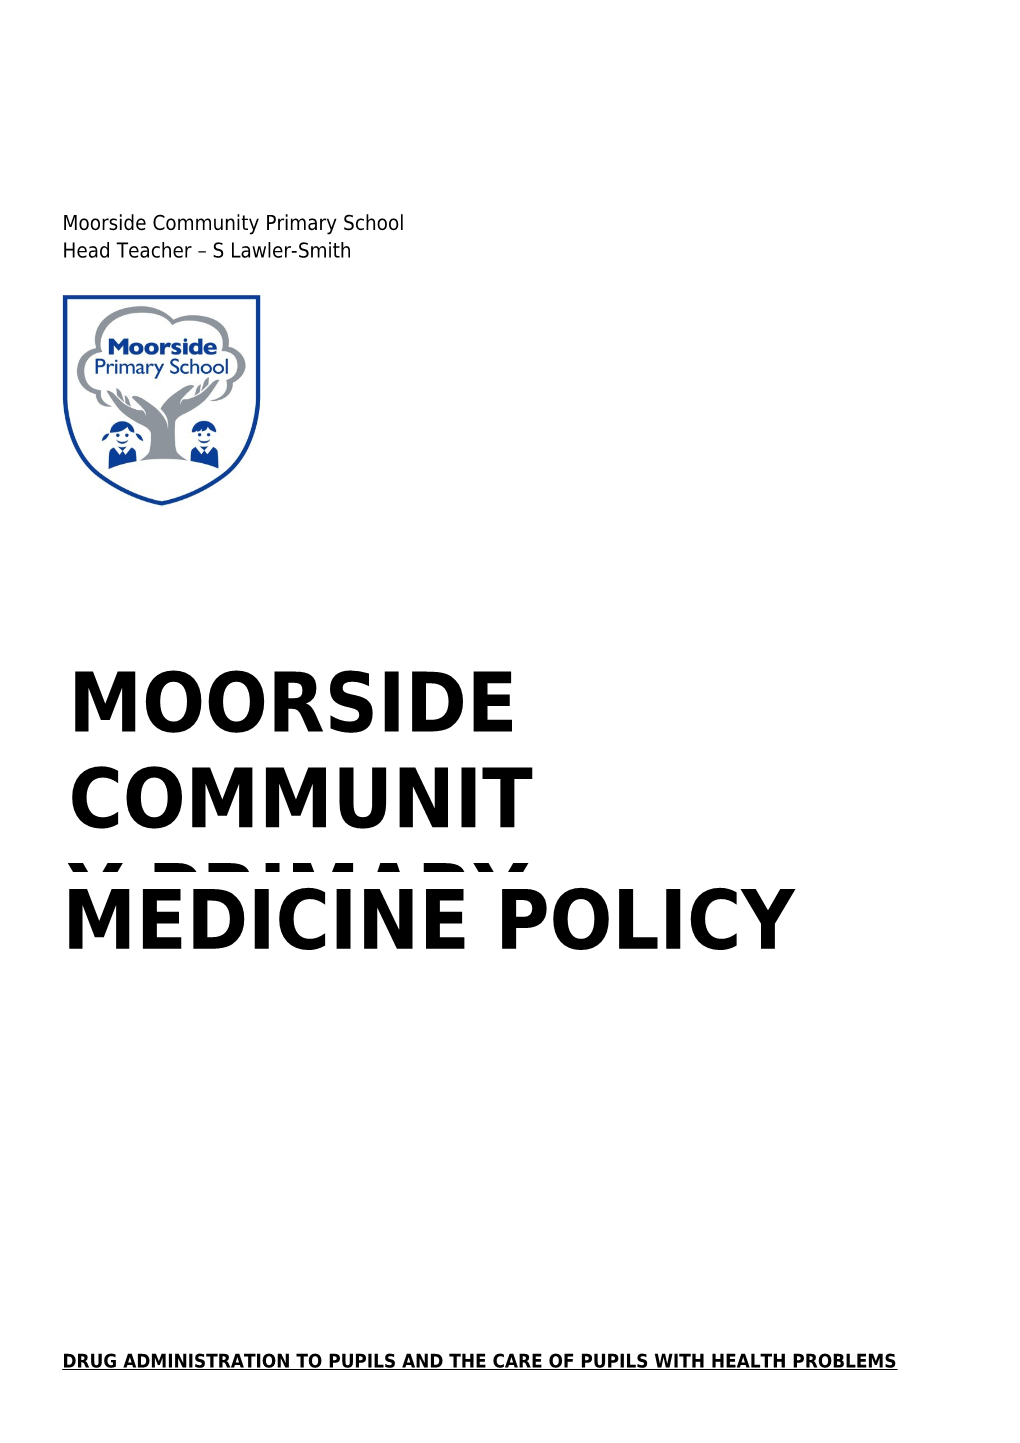 Moorside Community Primary School Medicine Policy Page 1